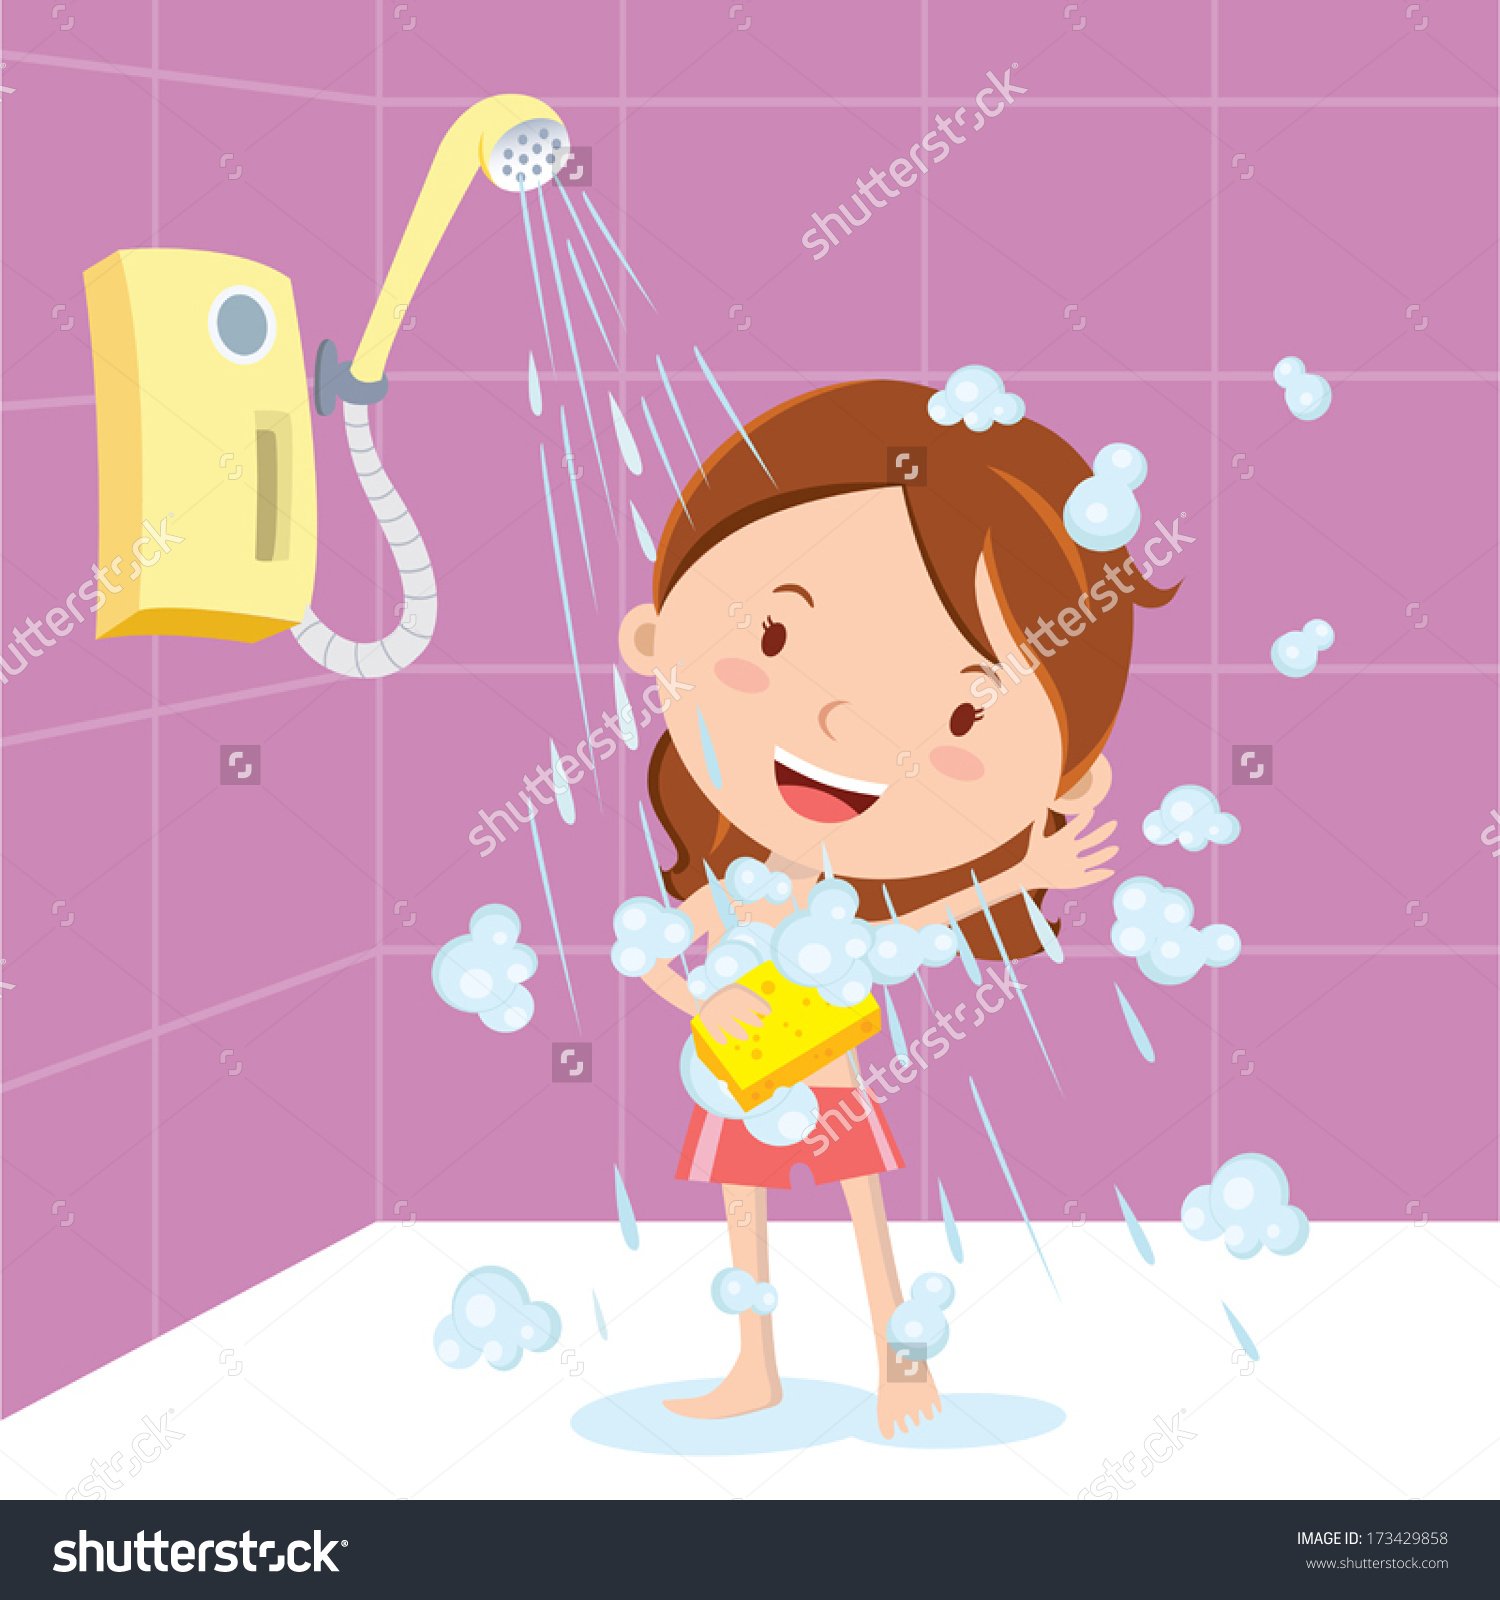 Have s shower. Мультяшка в душе. Ребенок под душем.